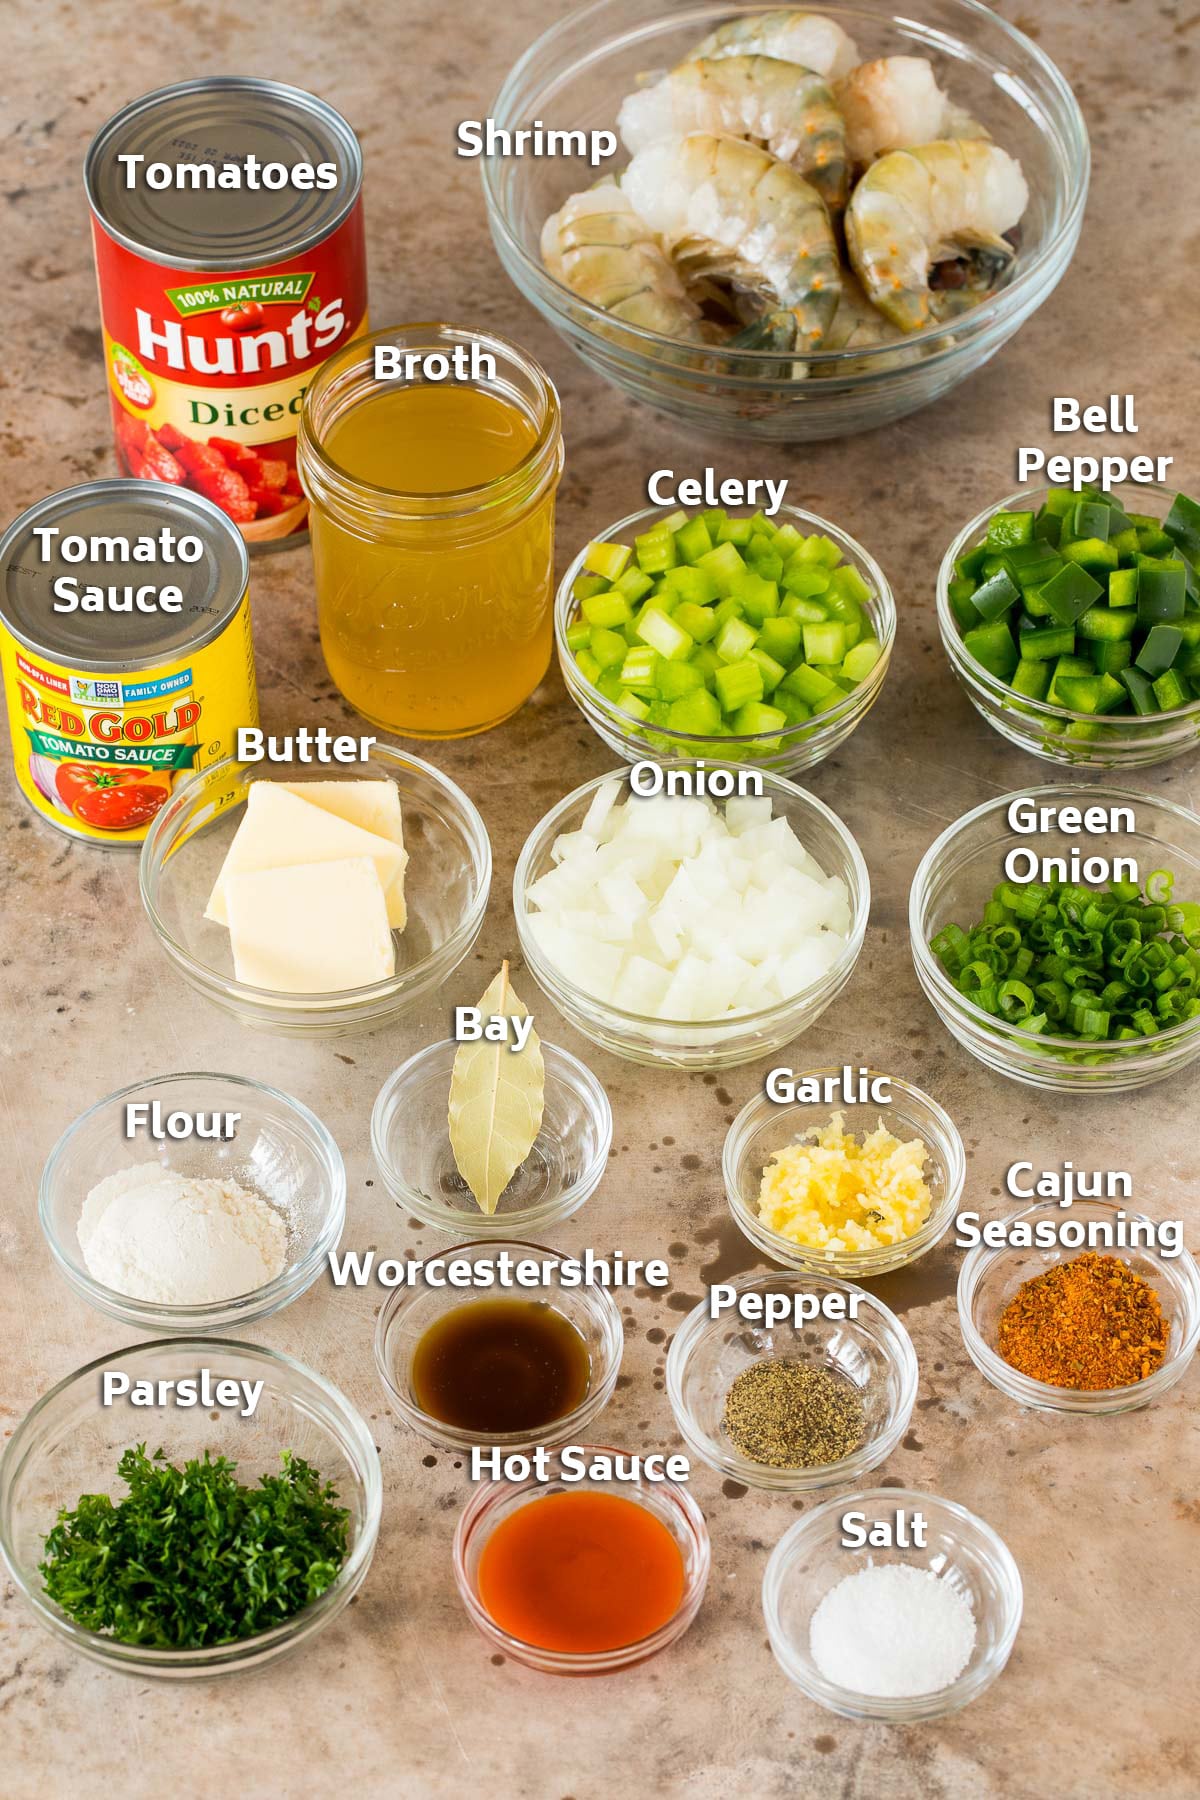 Bowls of ingredients including shrimp, vegetables, broth, herbs and seasonings.